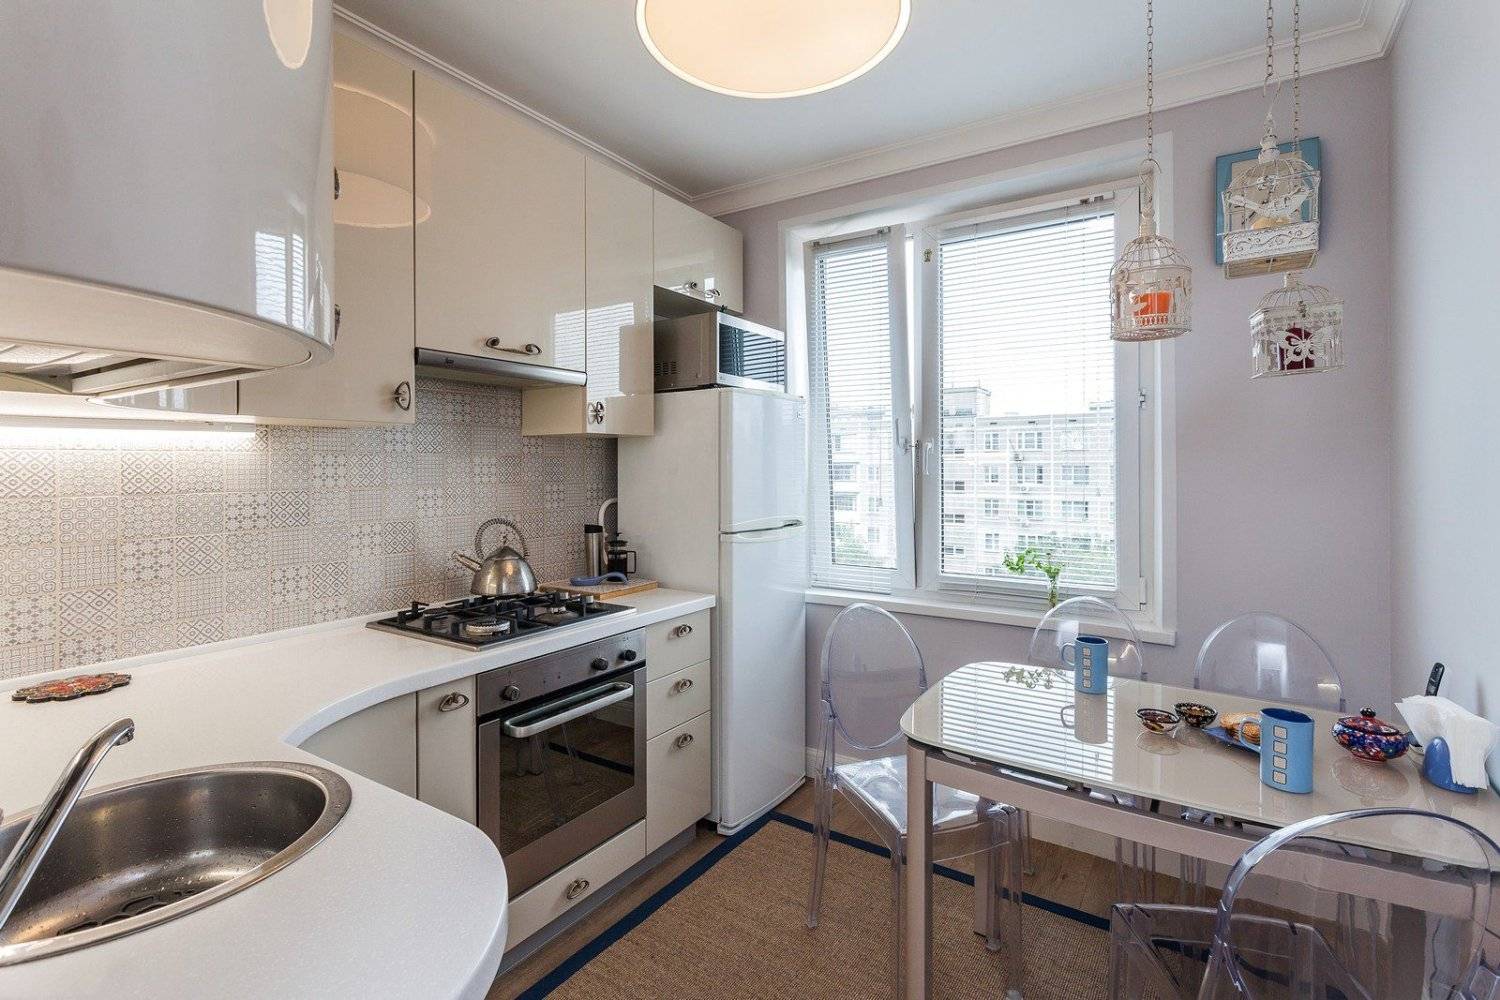 Кухня в панельном доме: планировка и дизайн маленькой кухни в девятиэтажном панельном доме (фото)кухня — вкус комфорта